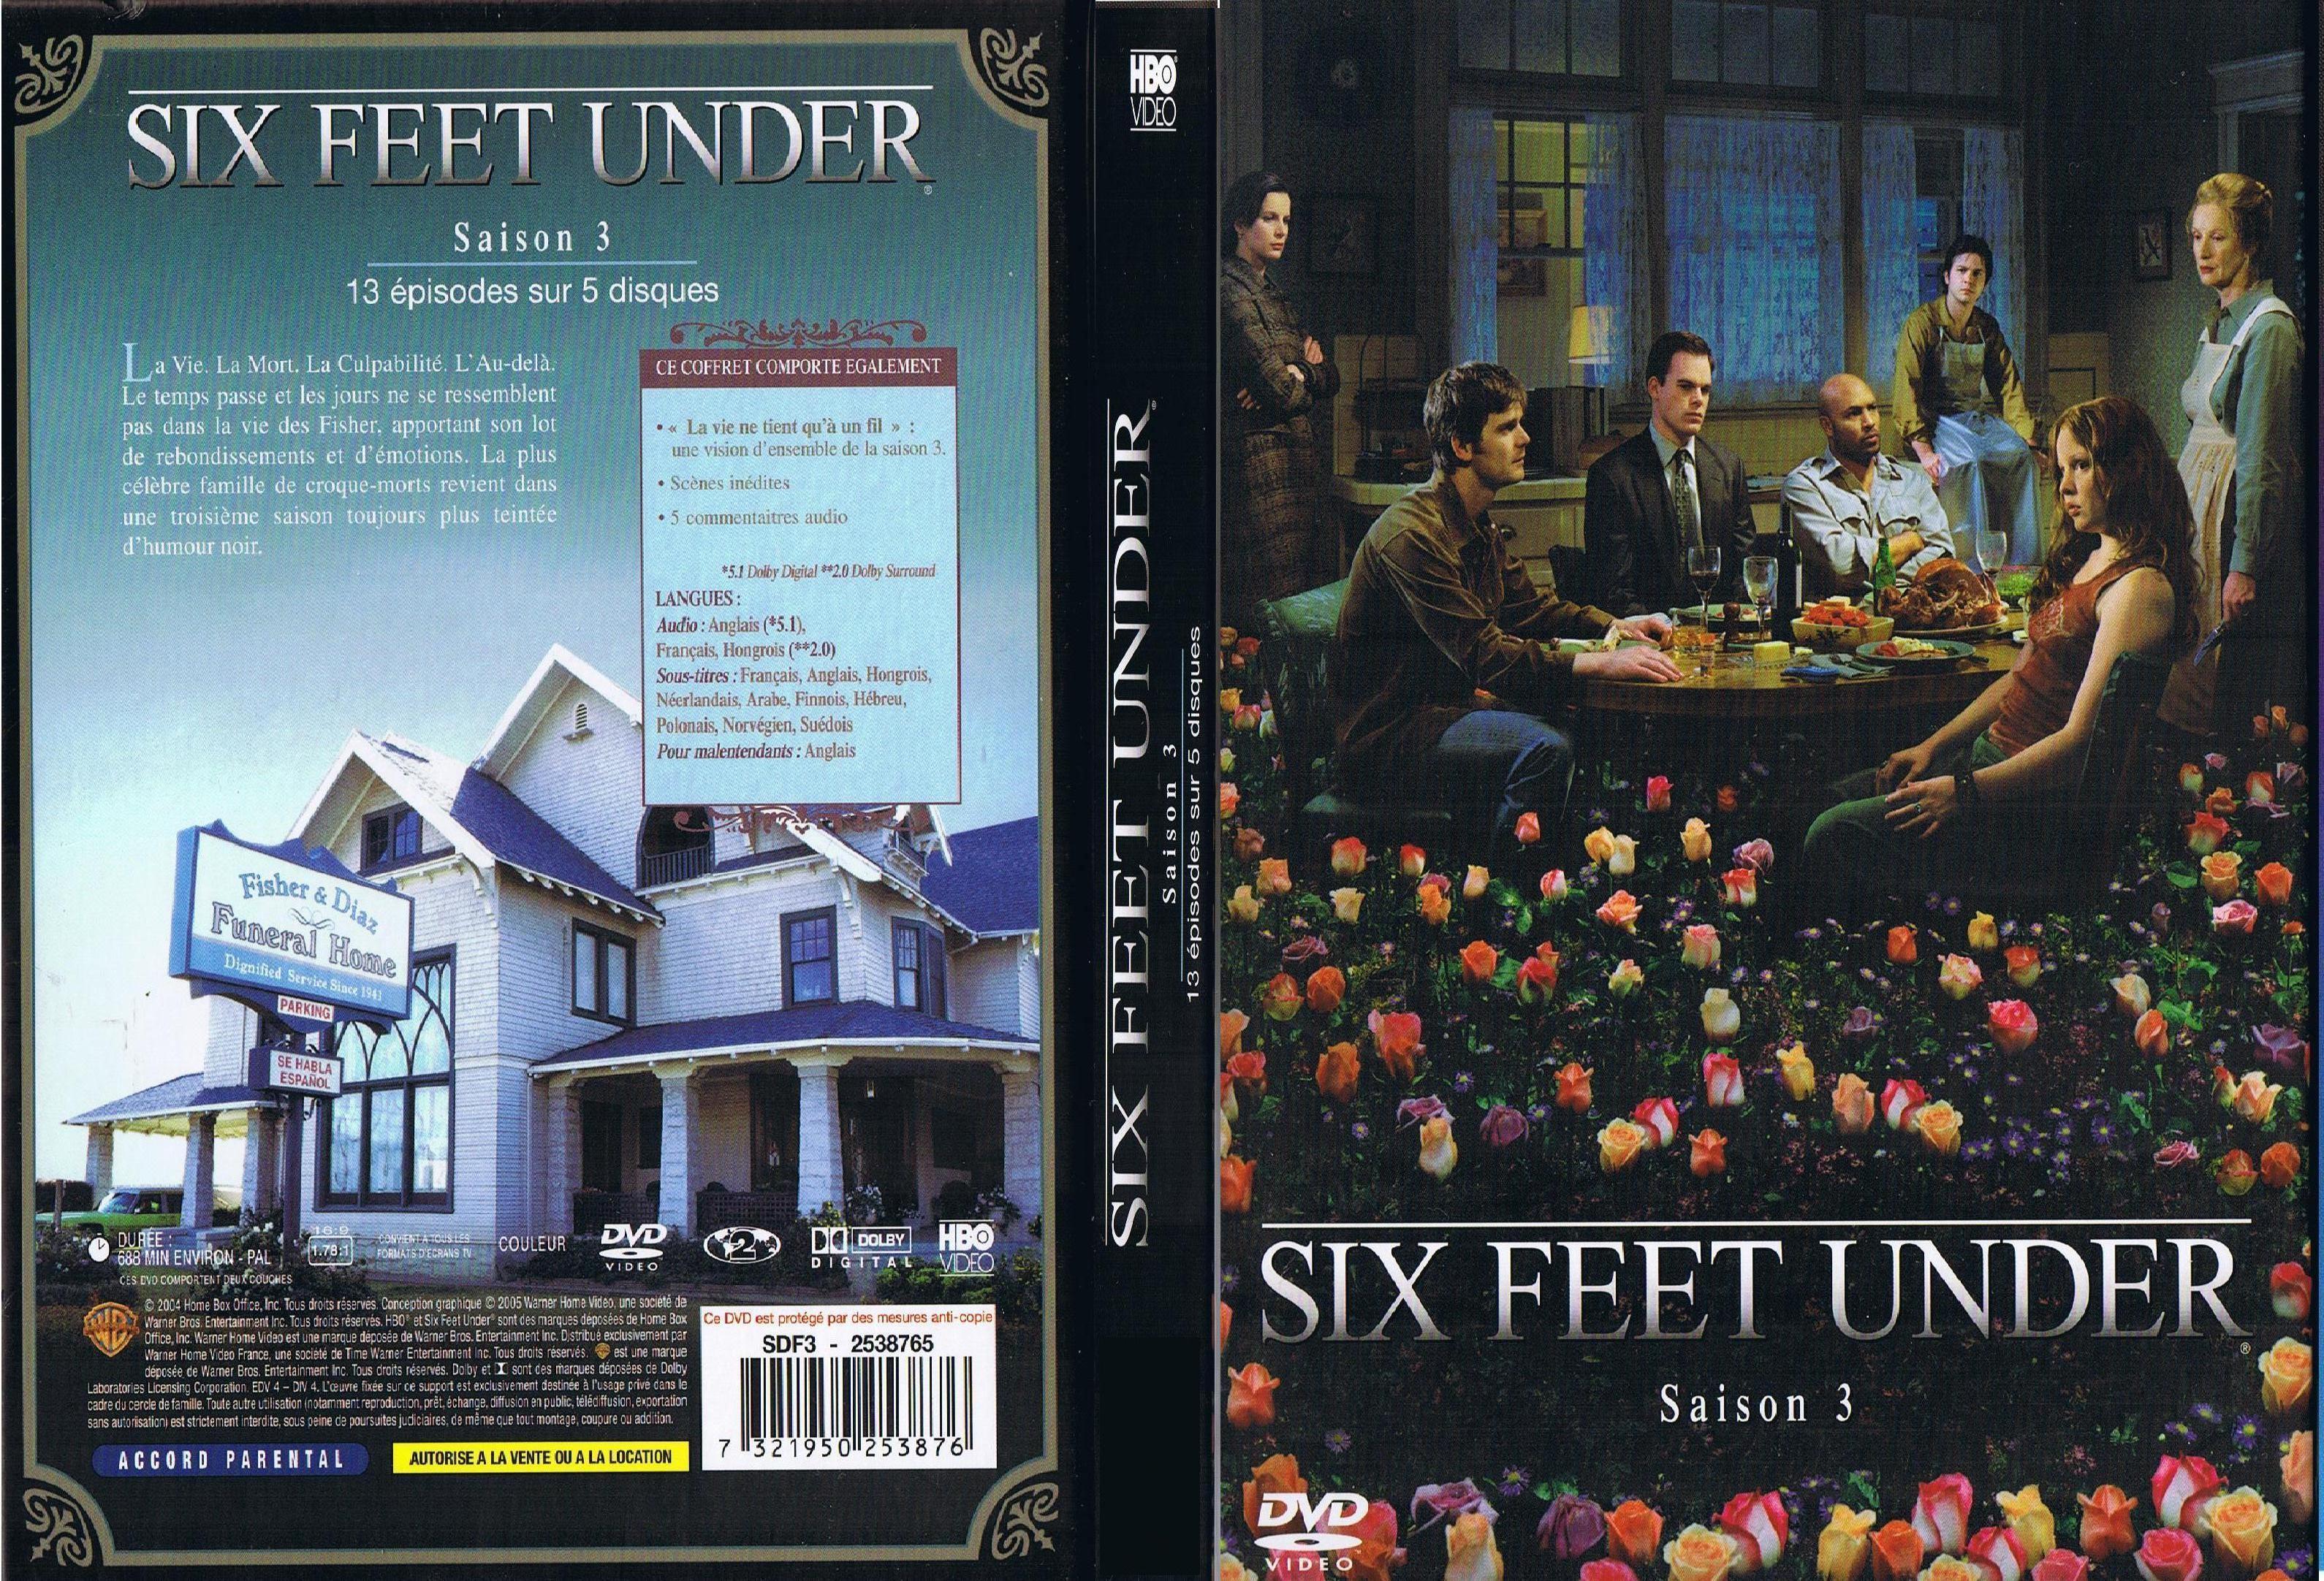 Jaquette DVD Six feet under saison 3